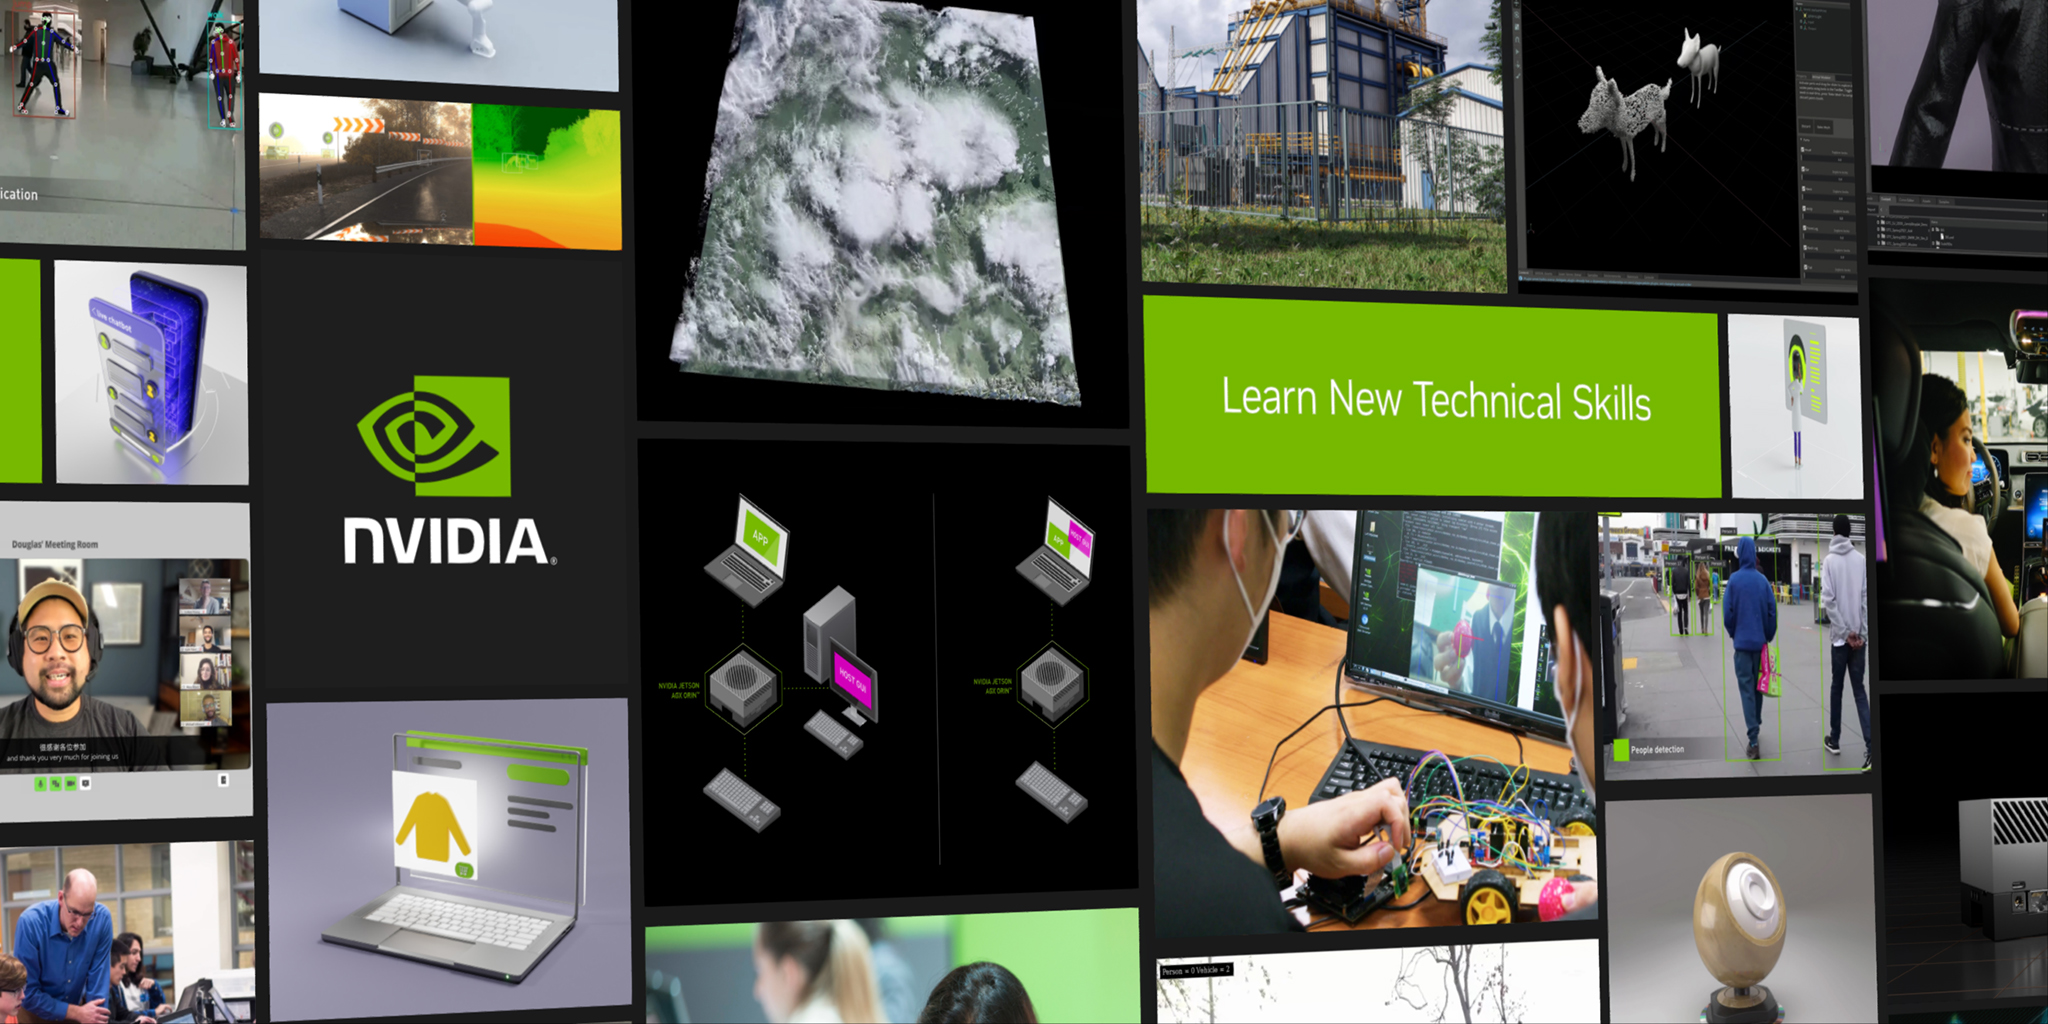 ‘NVIDIA 주요 개발자 프로그램’ 한 눈에 보기